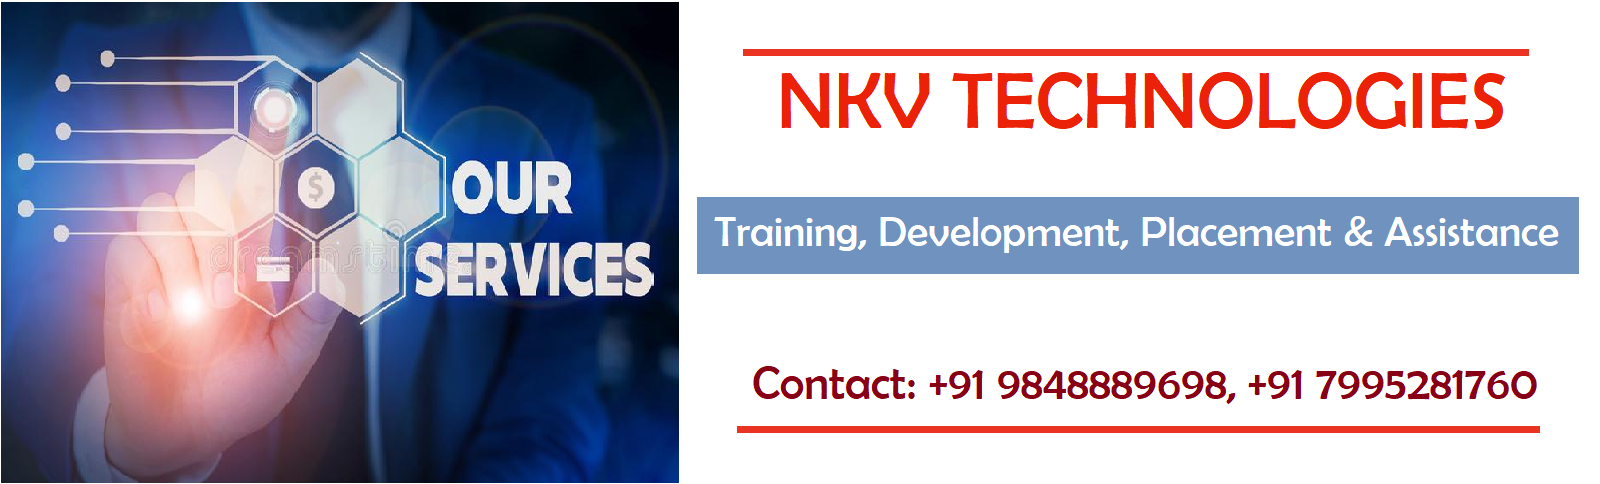 NKV Technologies